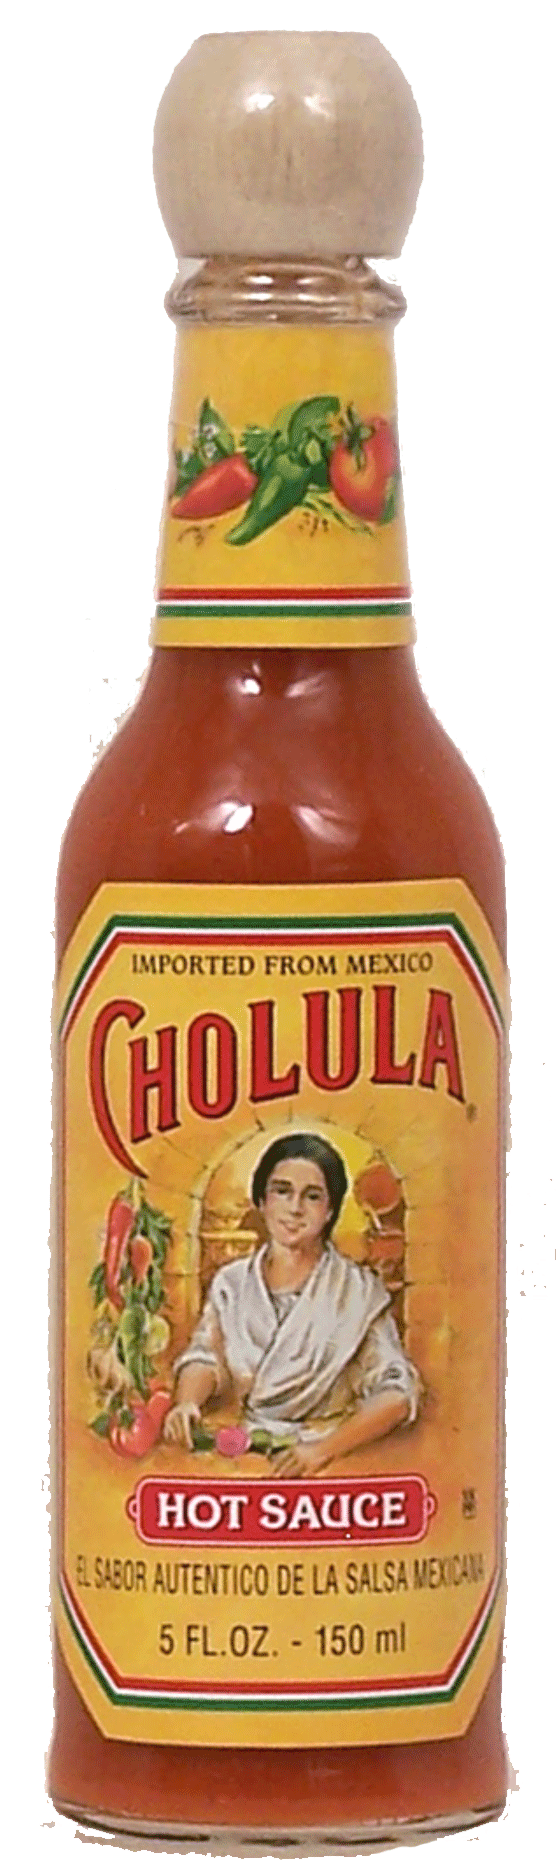 Cholula  hot sauce, sabor authentico de la salsa mexicana Full-Size Picture